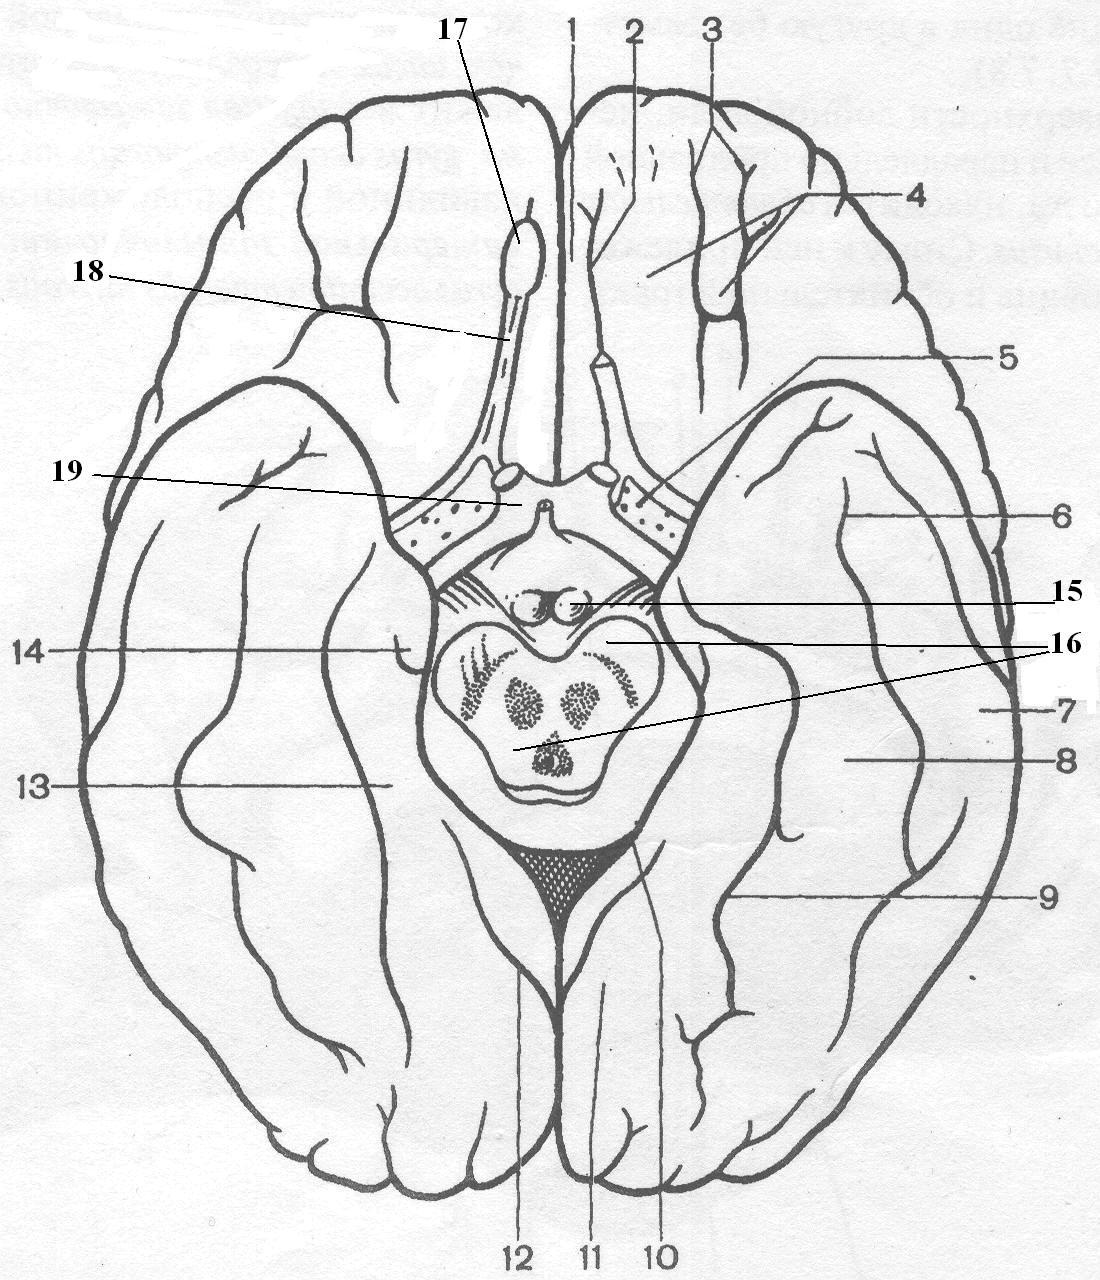 Нижнее полушарие мозга. Борозды и извилины базальной поверхности головного мозга. Нижняя поверхность полушария головного мозга. Нижняя поверхность головного мозга извилины. Базальная поверхность полушарий большого мозга.